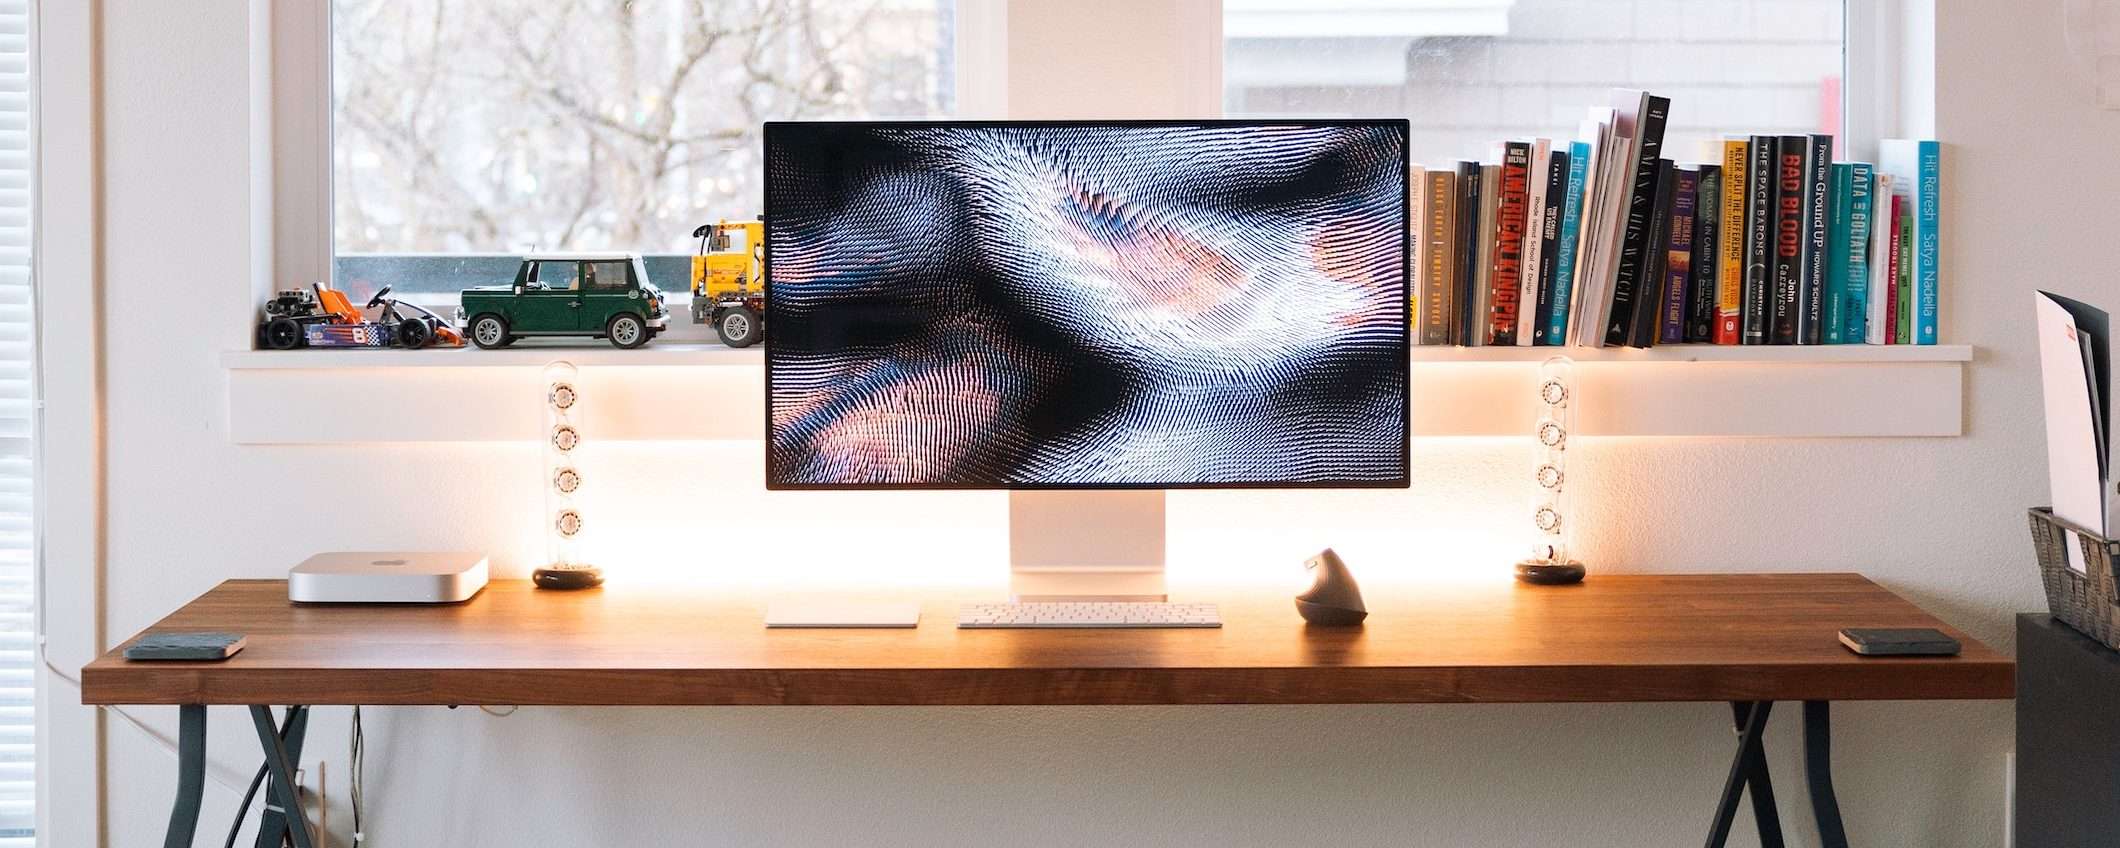 Apple sta lavorando a un monitor esterno 7K